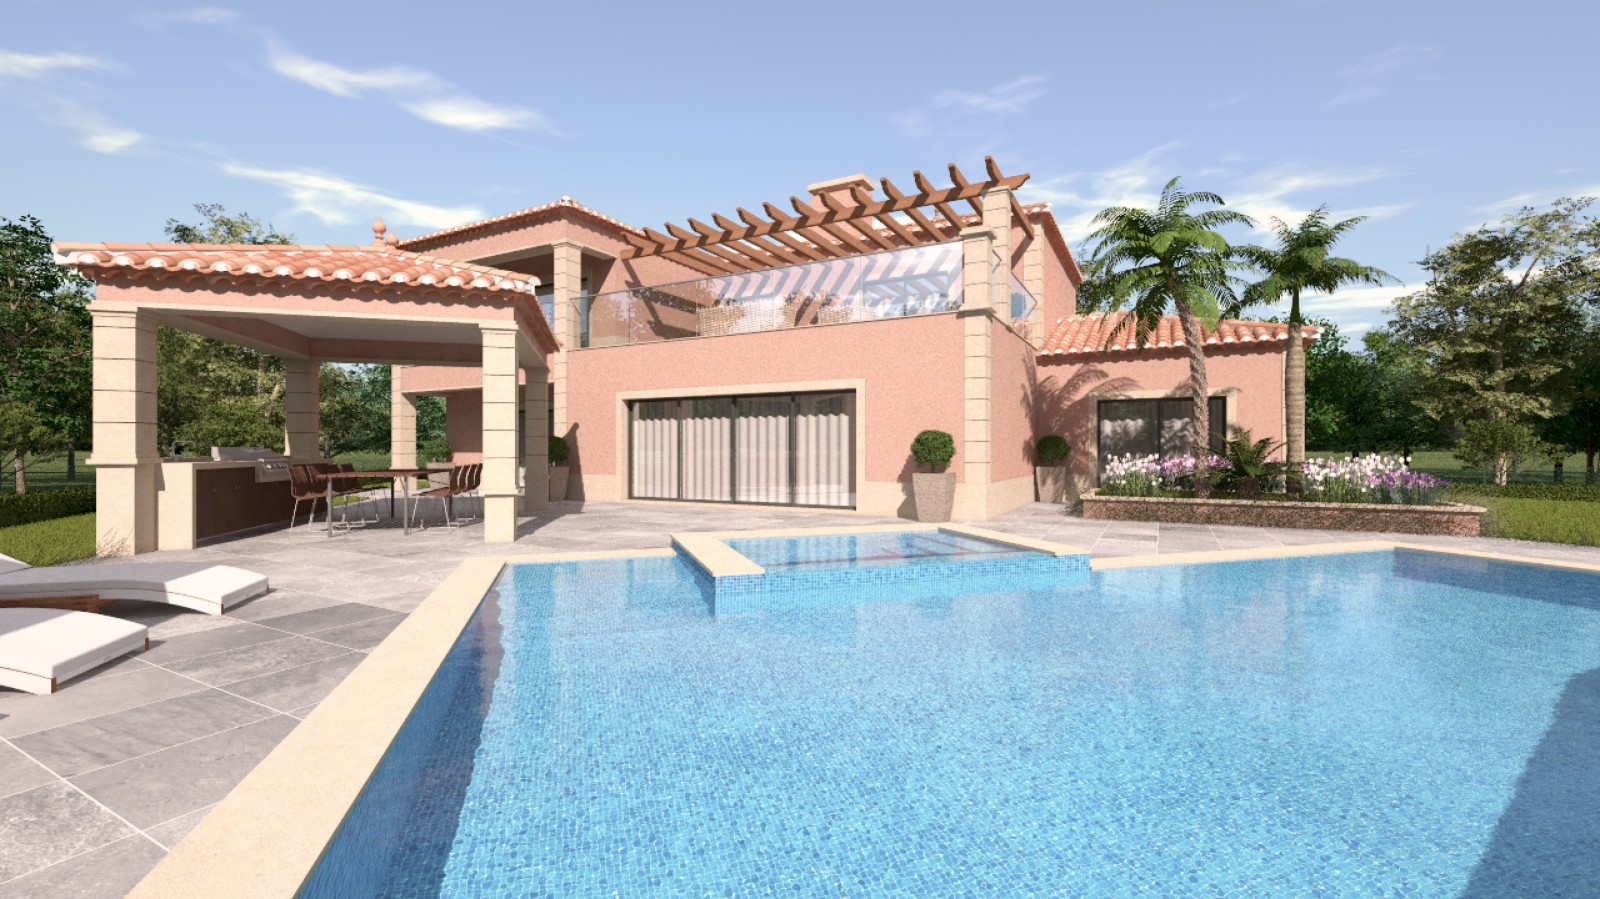 Moradia V4 com piscina, para venda em Portimão, Algarve_231704